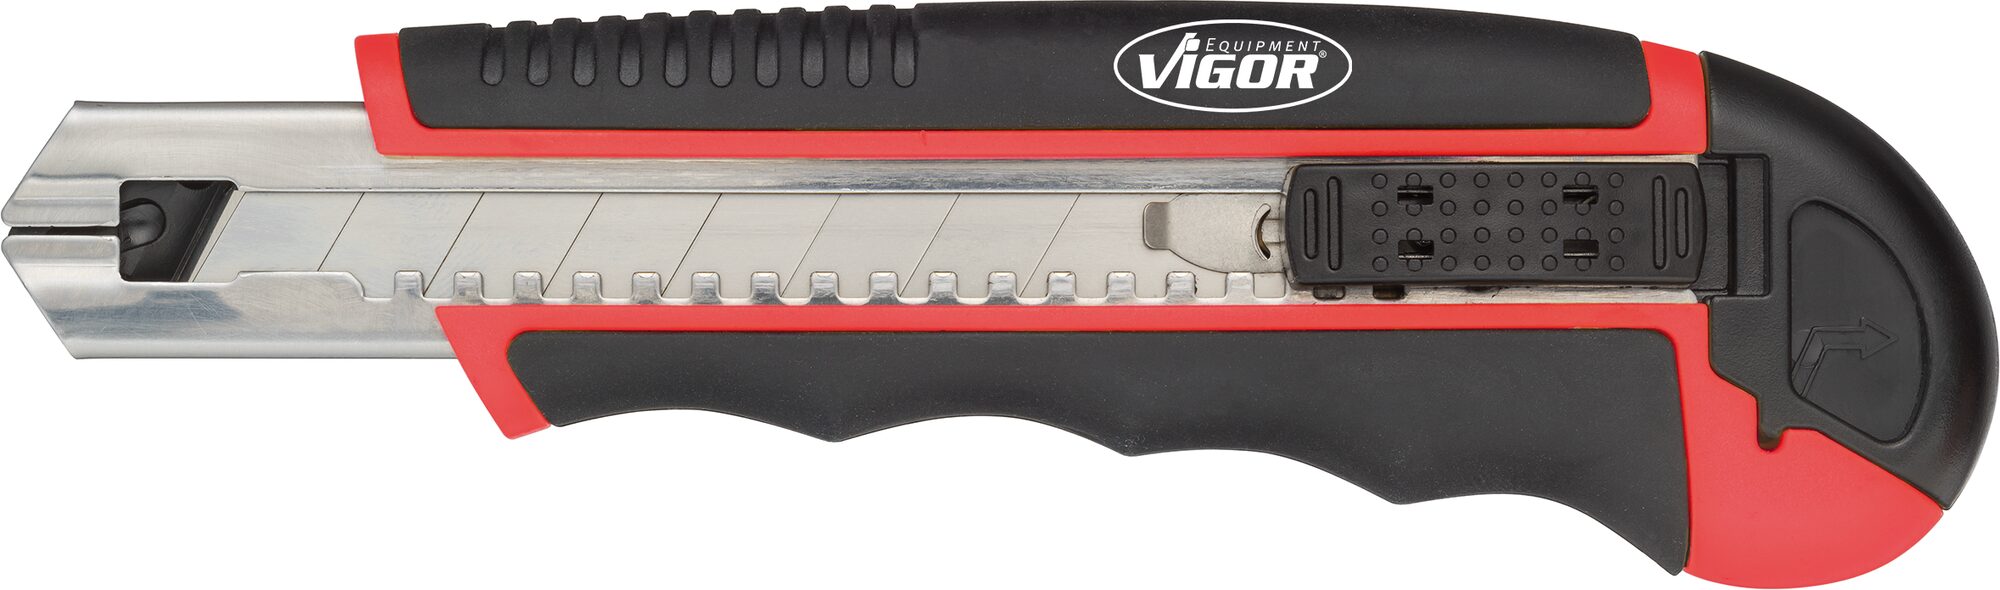 VIGOR Universalmesser ∙ V4275 ∙ 90 mm ∙ Anzahl Werkzeuge: 7